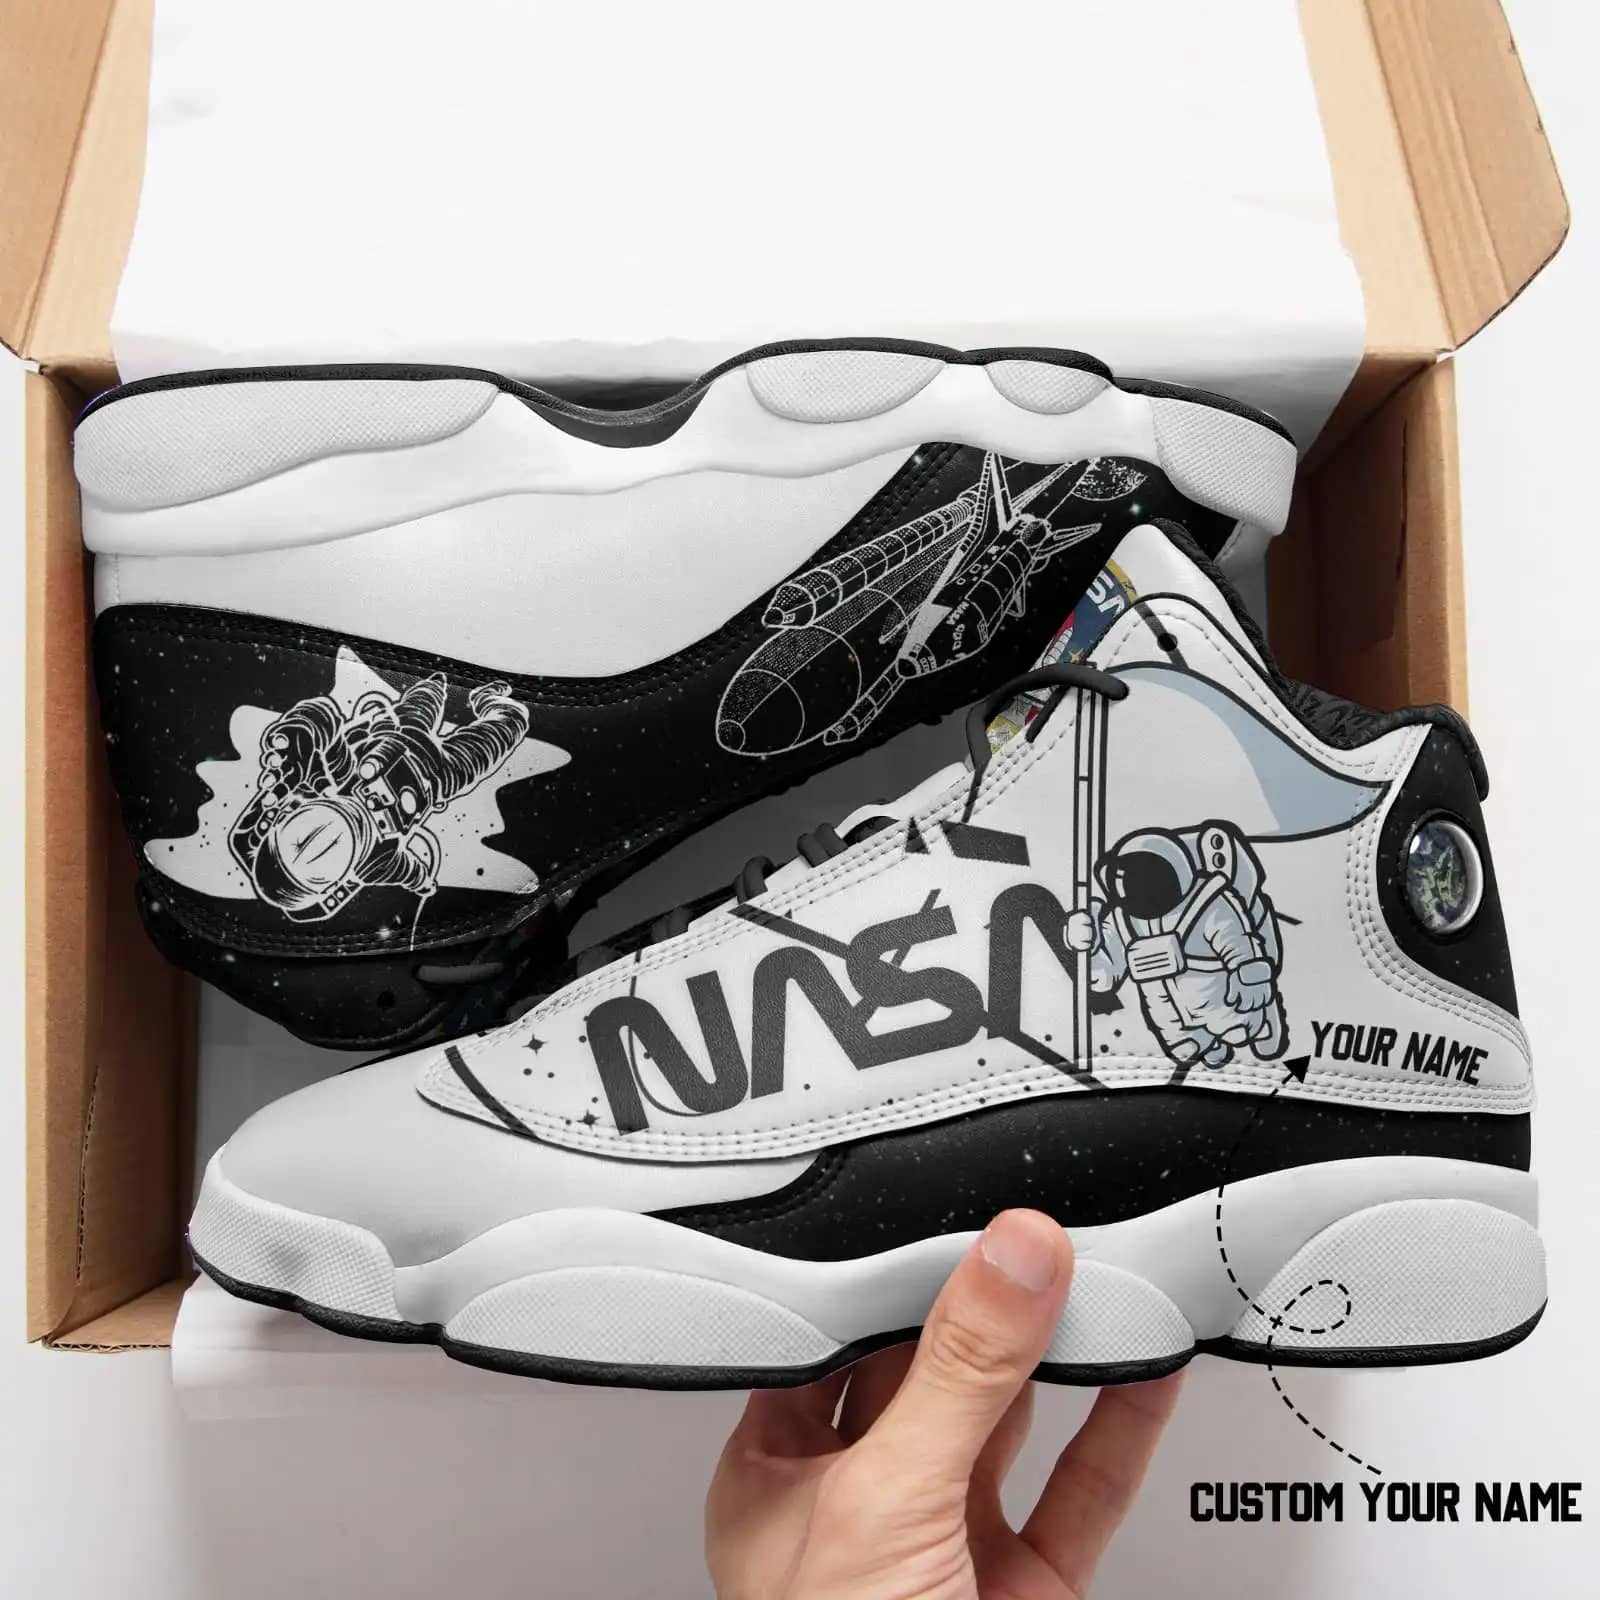 Nasa Personalized Air Jordan Shoes